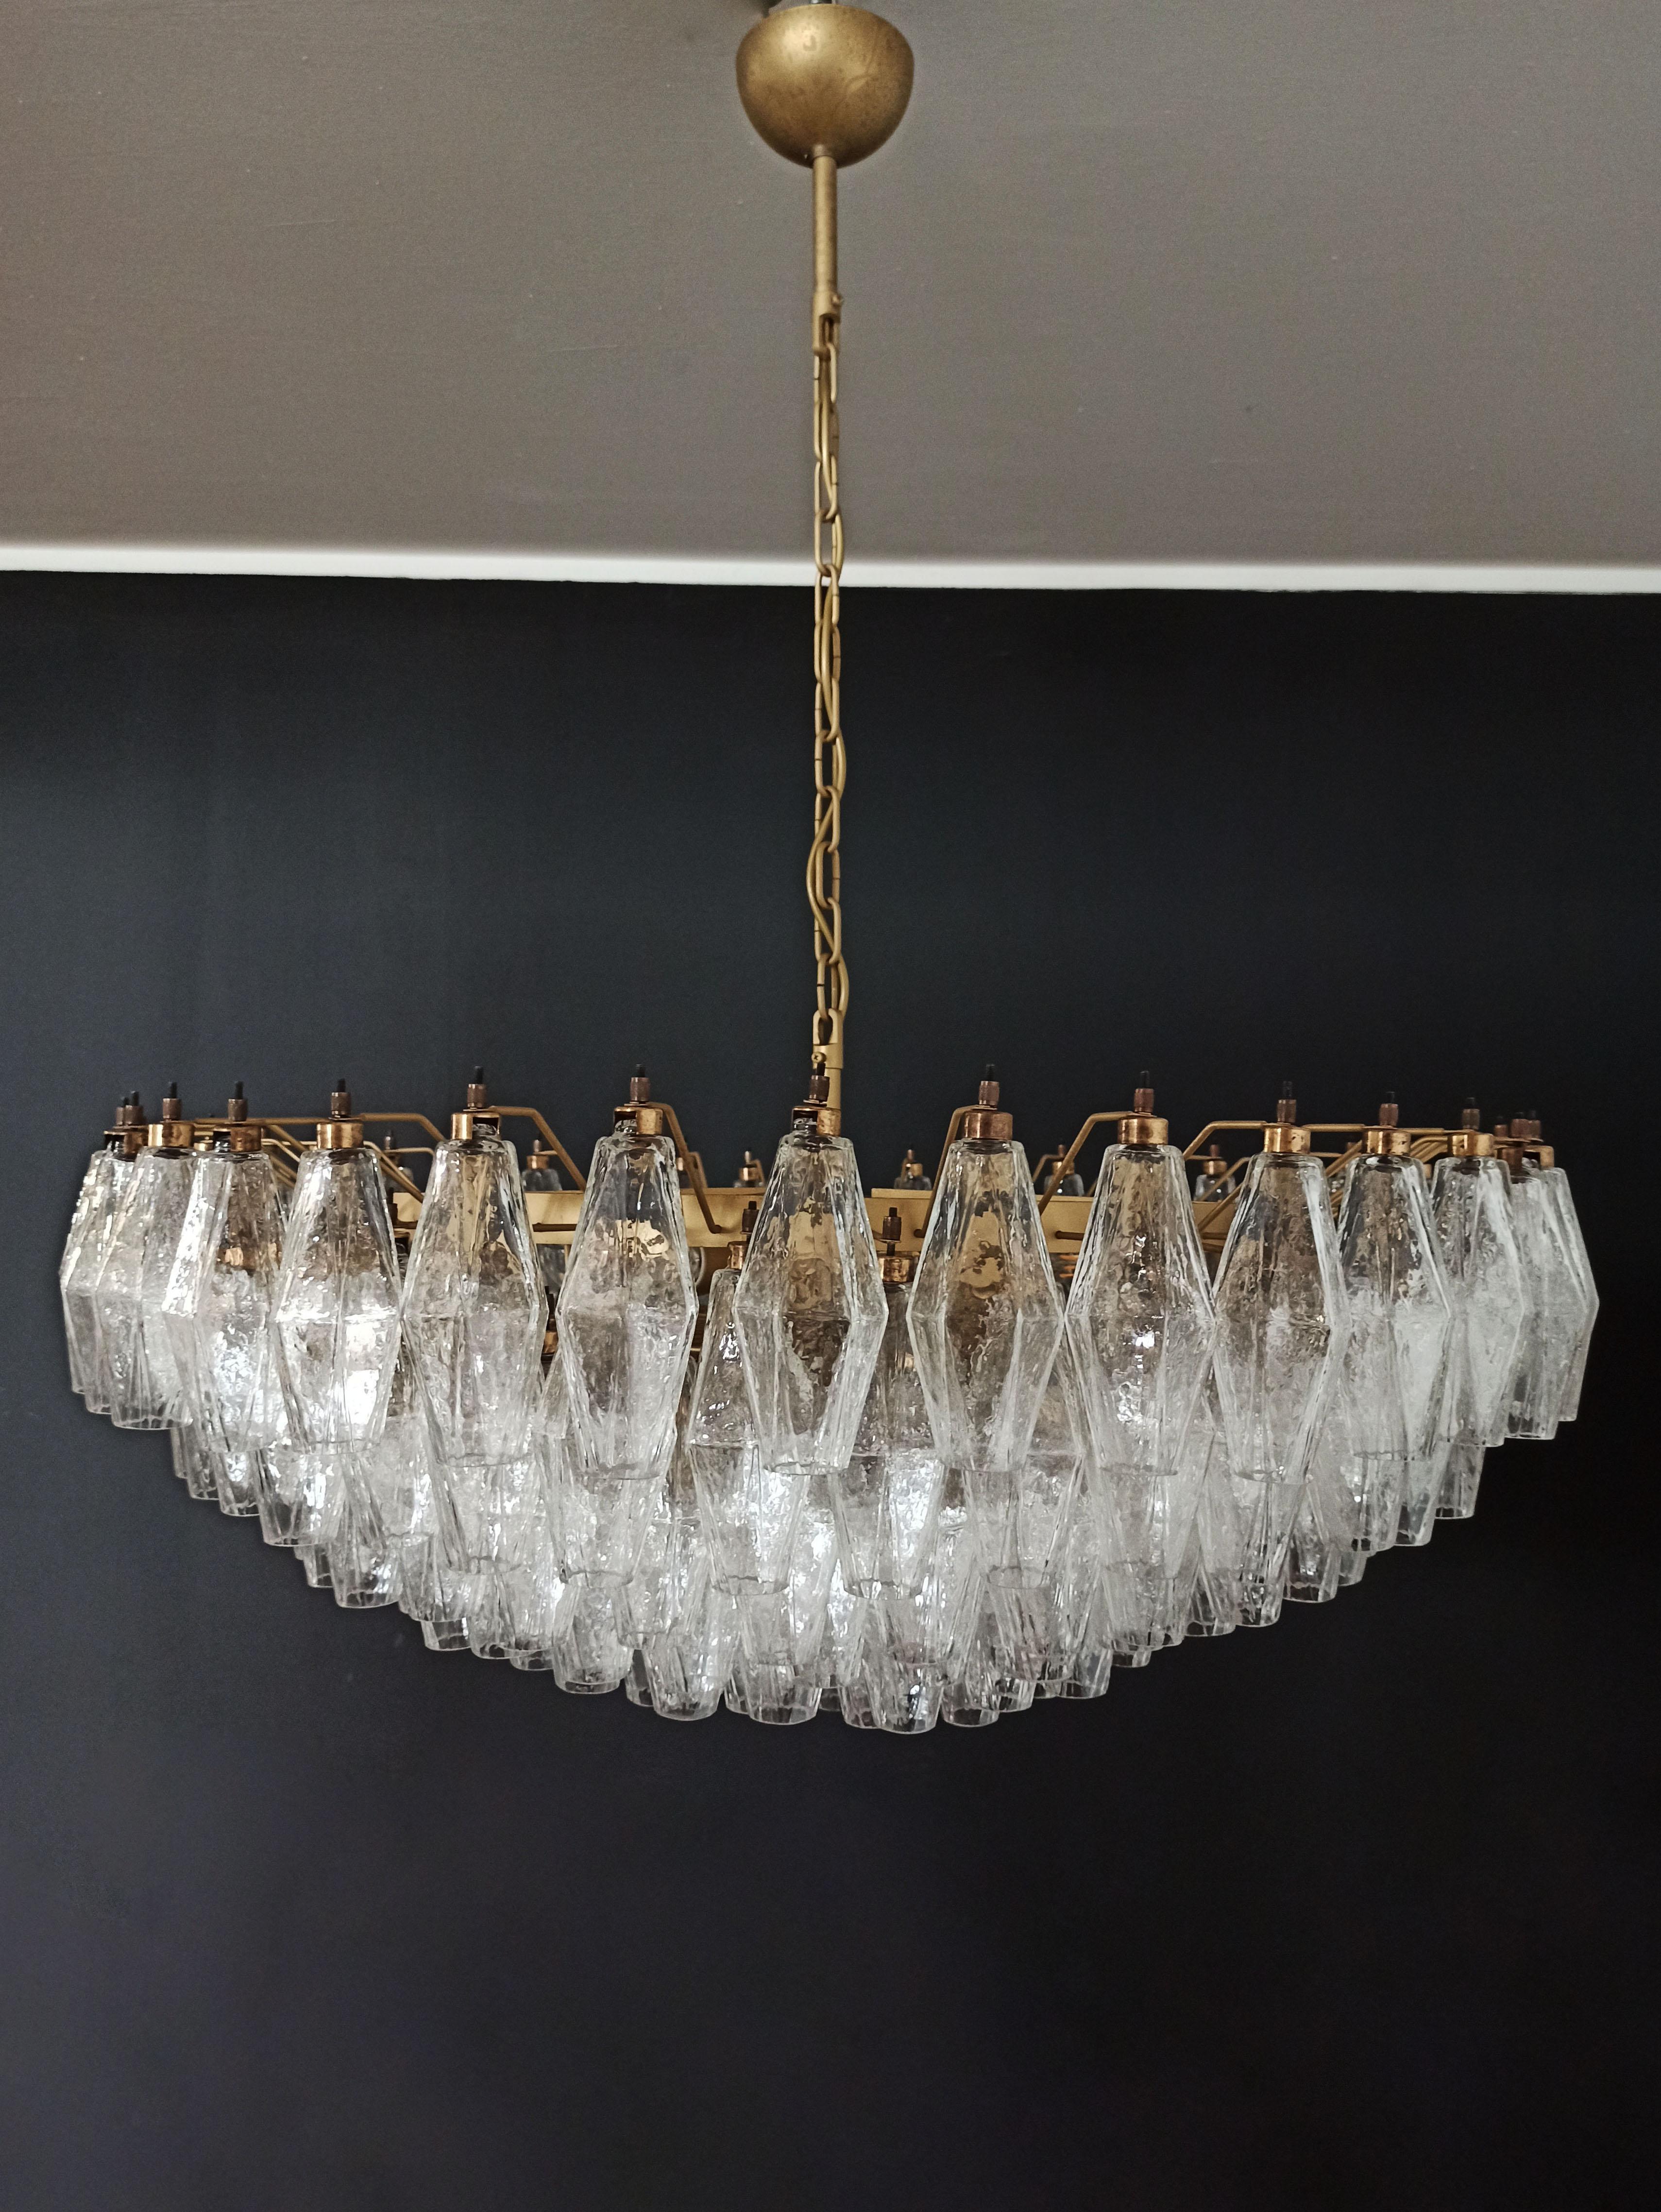 Amazing Murano glass Candelier - 185 poliedri In Good Condition For Sale In Gaiarine Frazione Francenigo (TV), IT